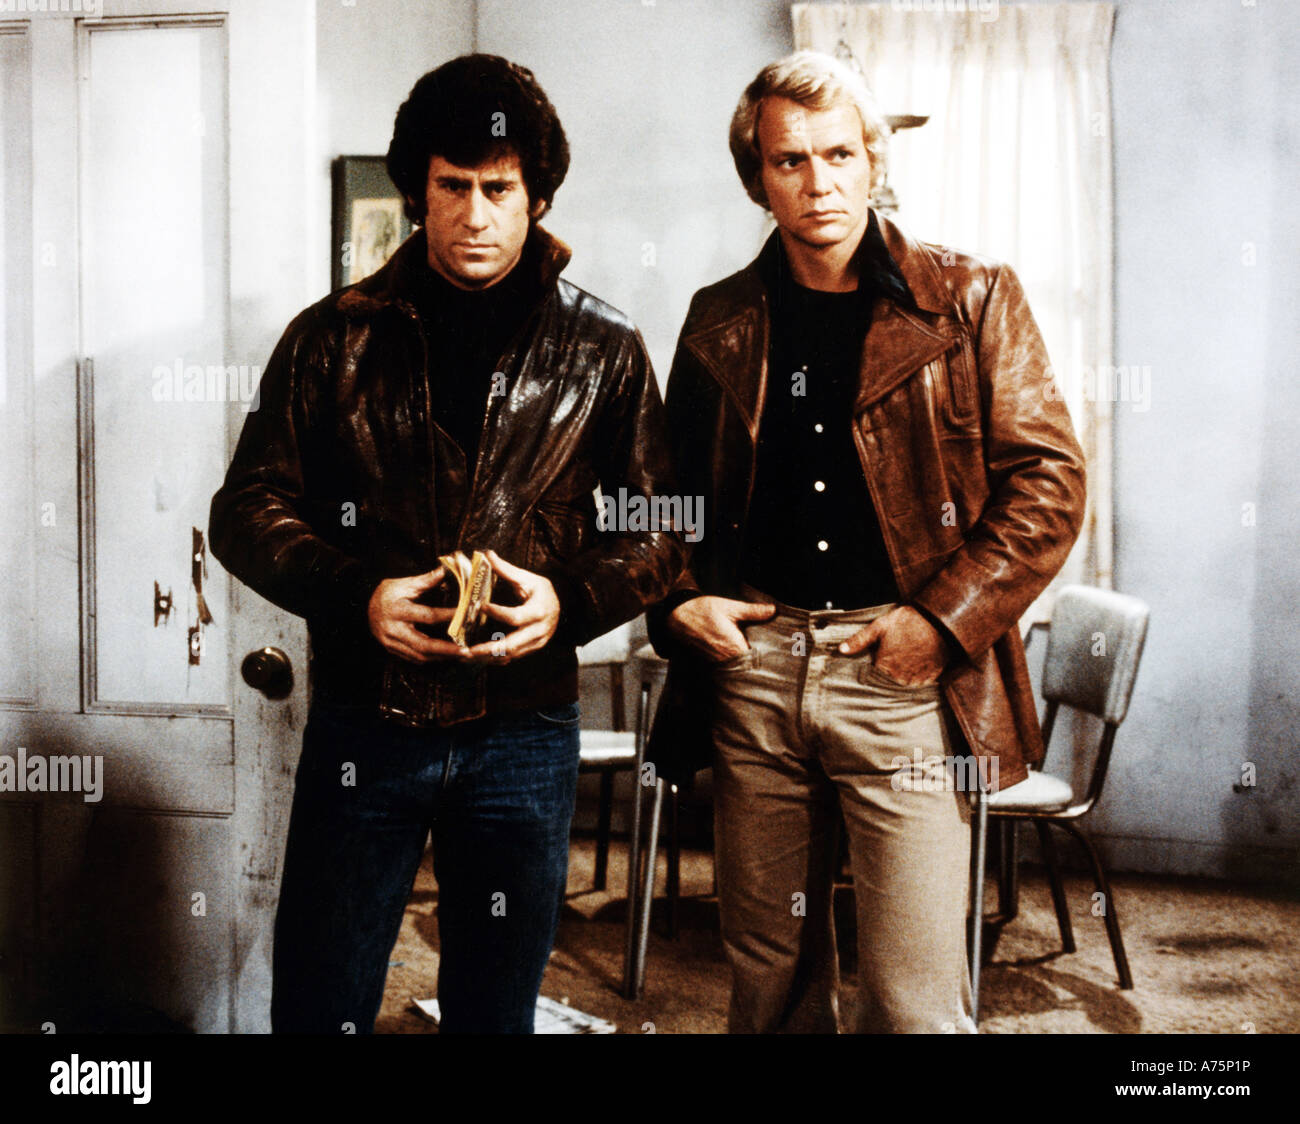 STARSKY und HUTCH US-Fernsehserie 1975 bis 1979 mit Paul Michael Glaser auf der linken Seite als Starsky und David Soul als Hutch Stockfoto